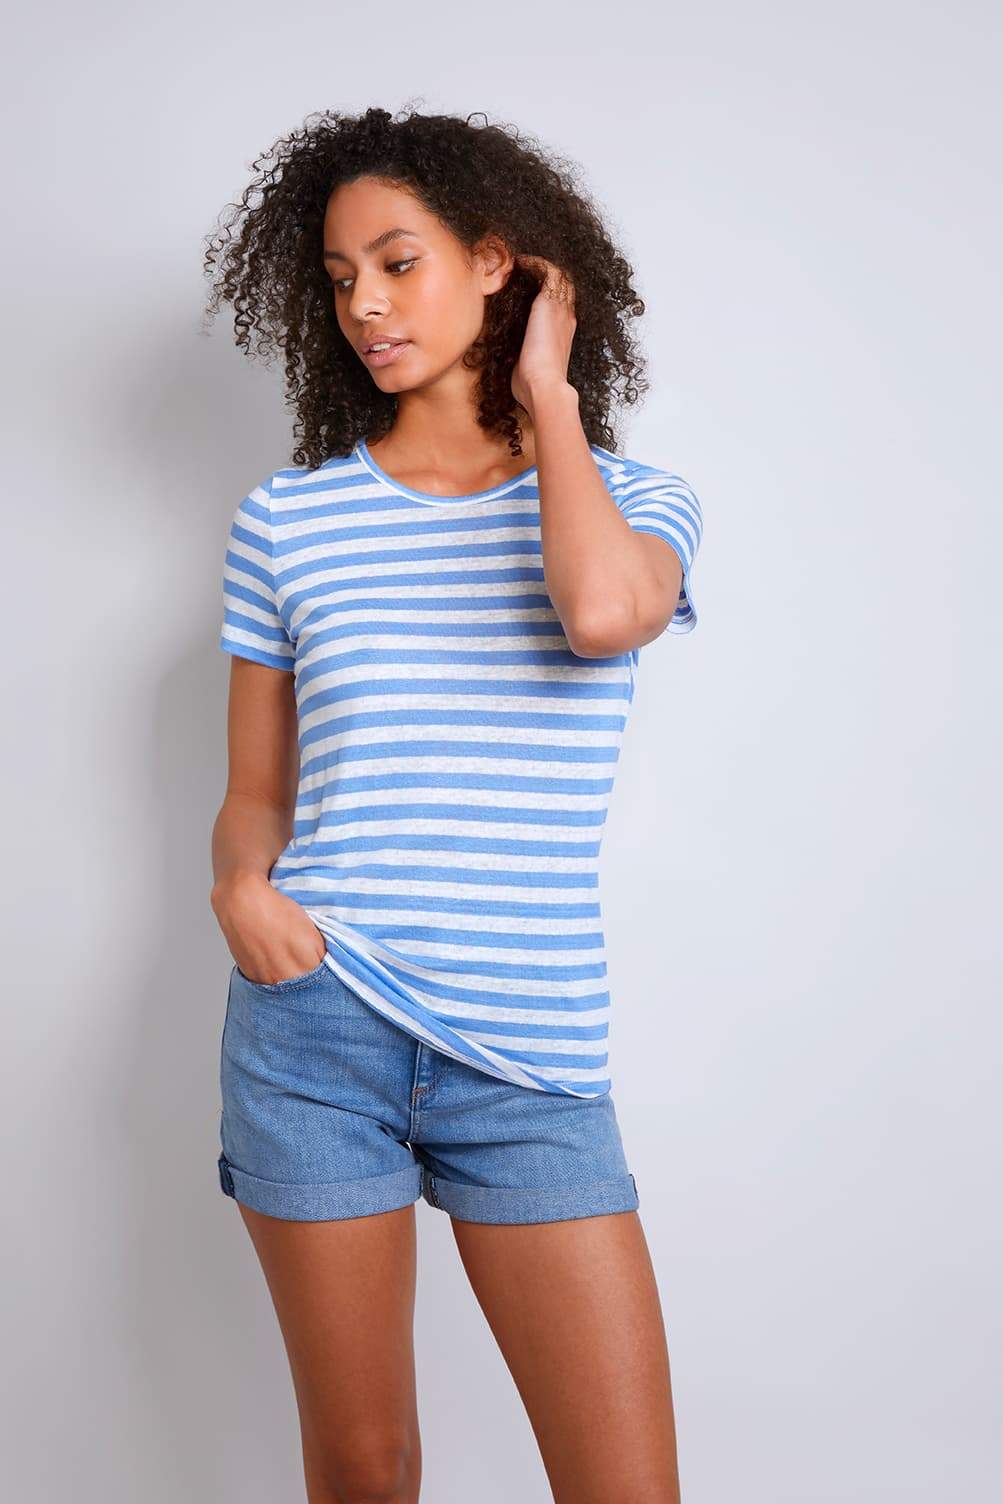 Women's Short Sleeve Striped Linen T-shirt - Blue Short Sleeve T-shirt - High Quality T-shirt - Stripe Linen T-Shirt - Lavender Hill Clothing